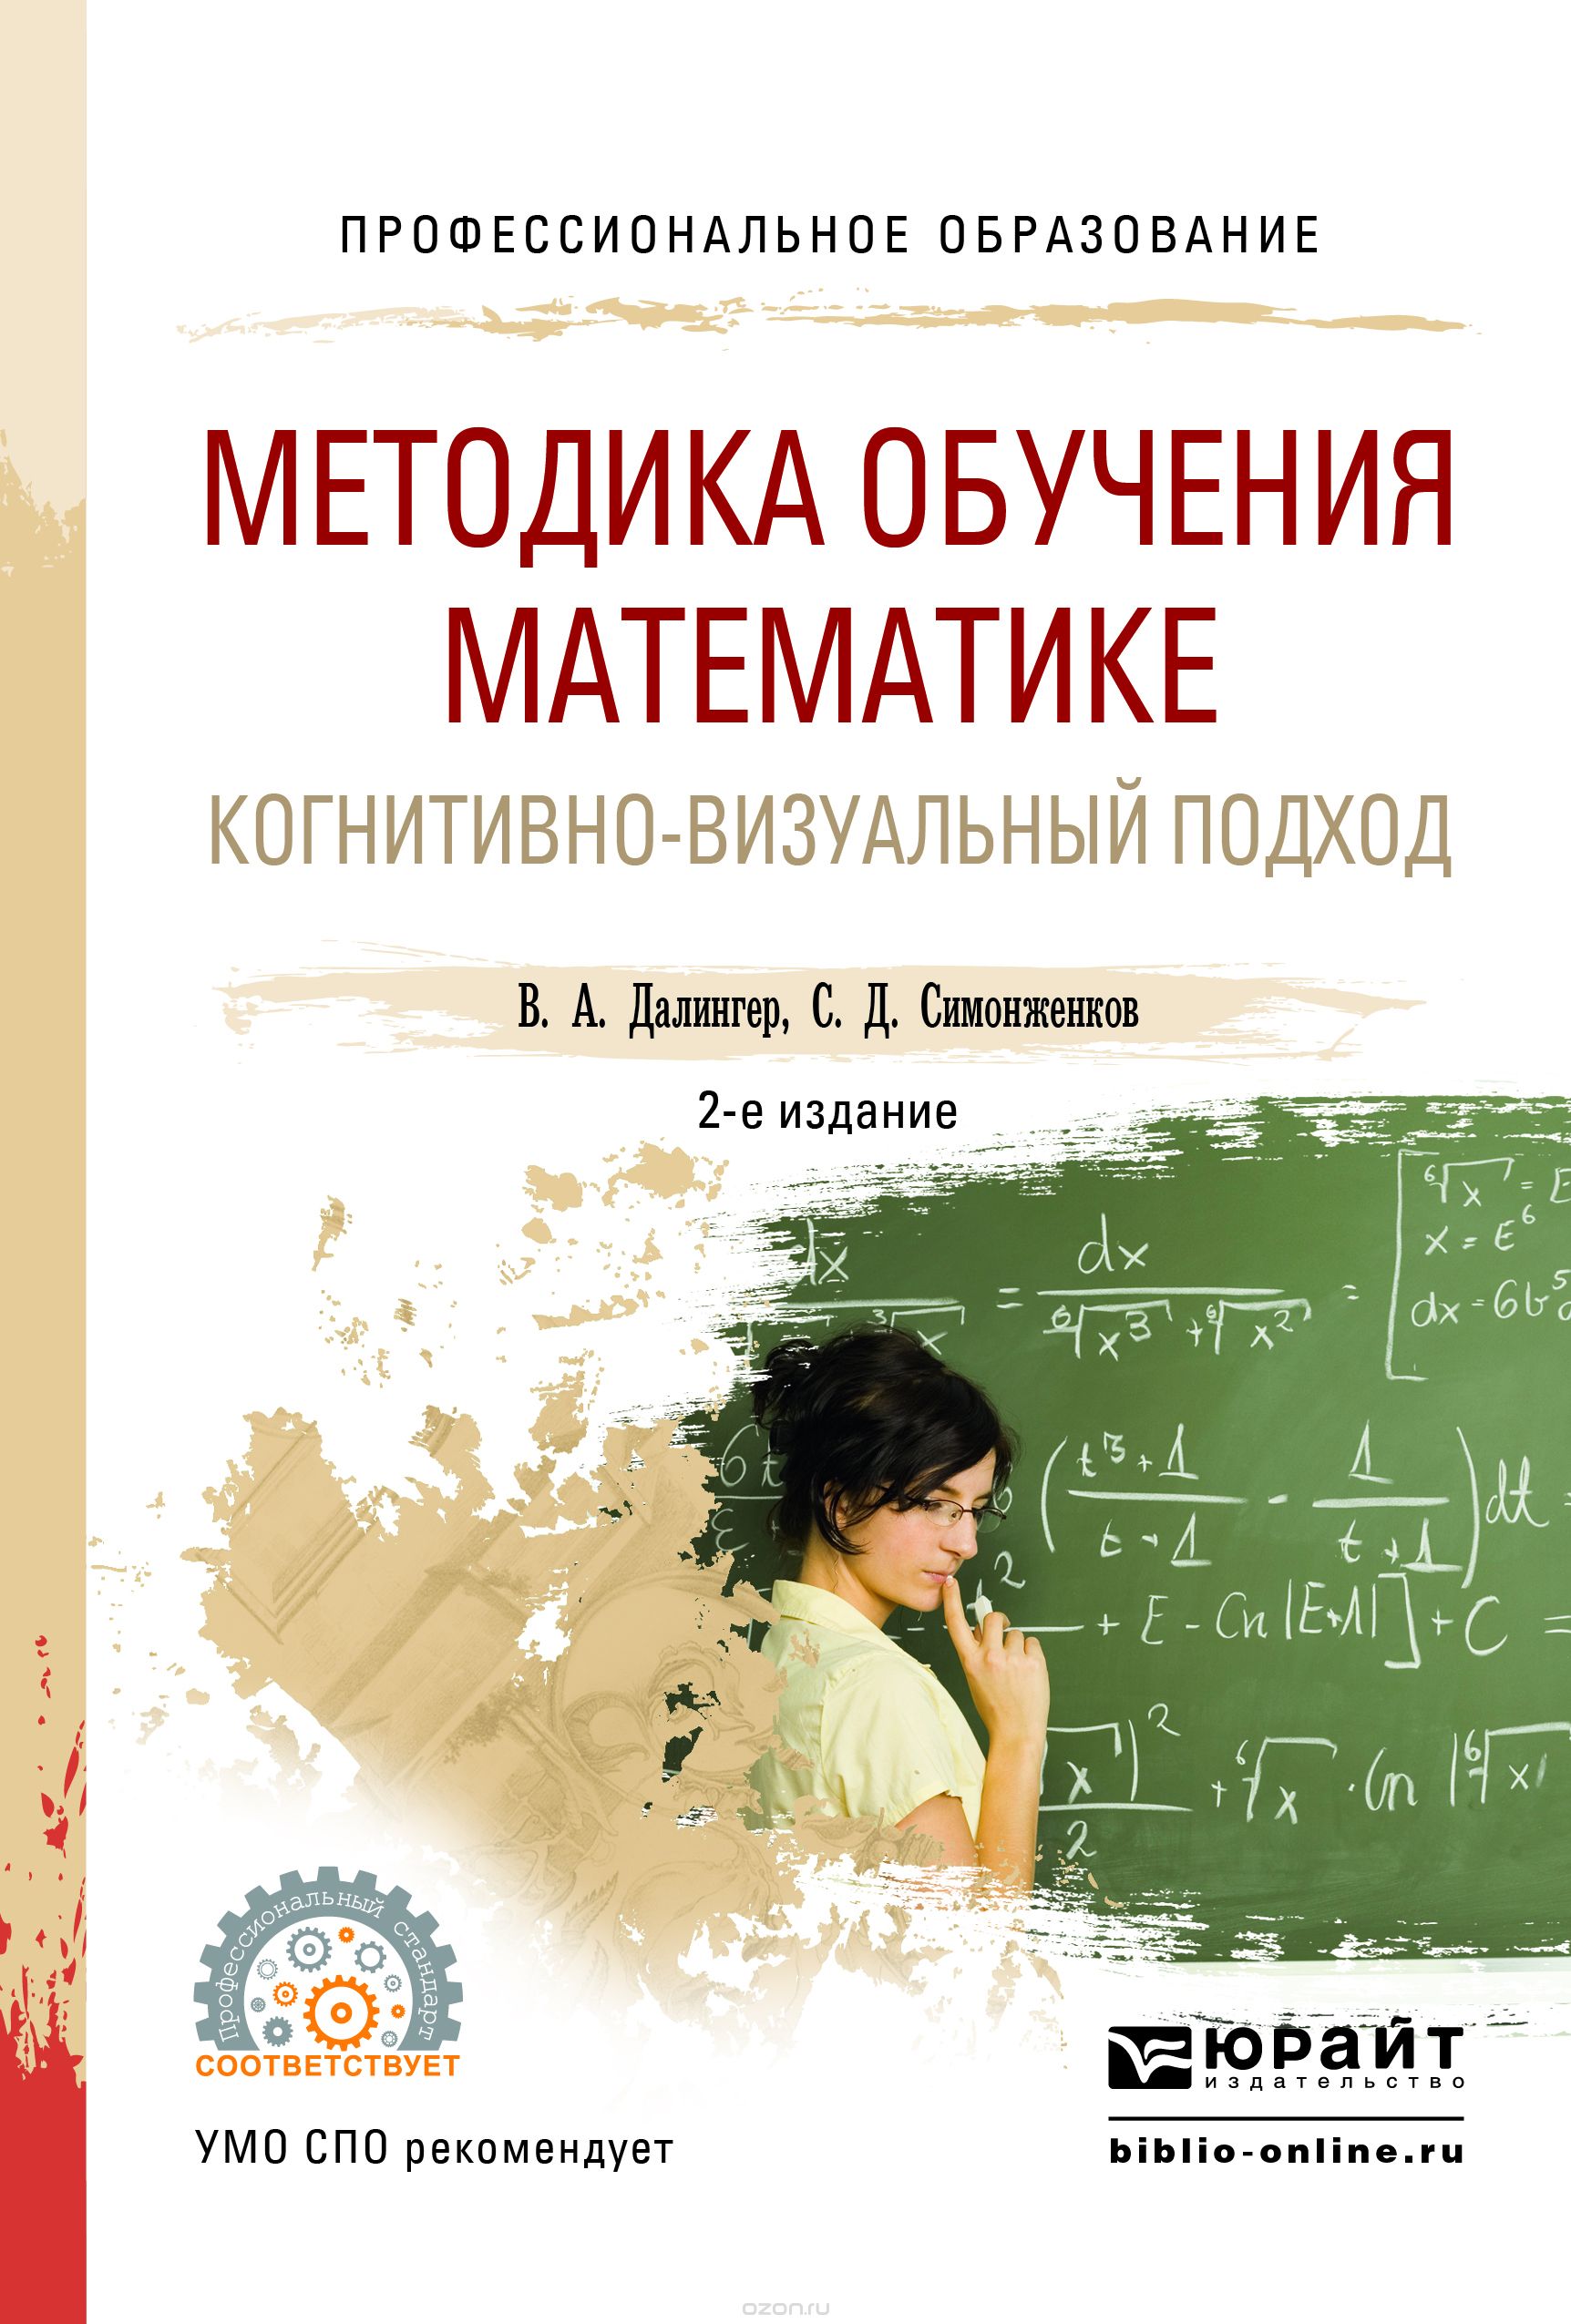 Методика обучения математике. Когнитивно-визуальный подход. Учебник, В. А. Далингер, С. Д. Симонженков